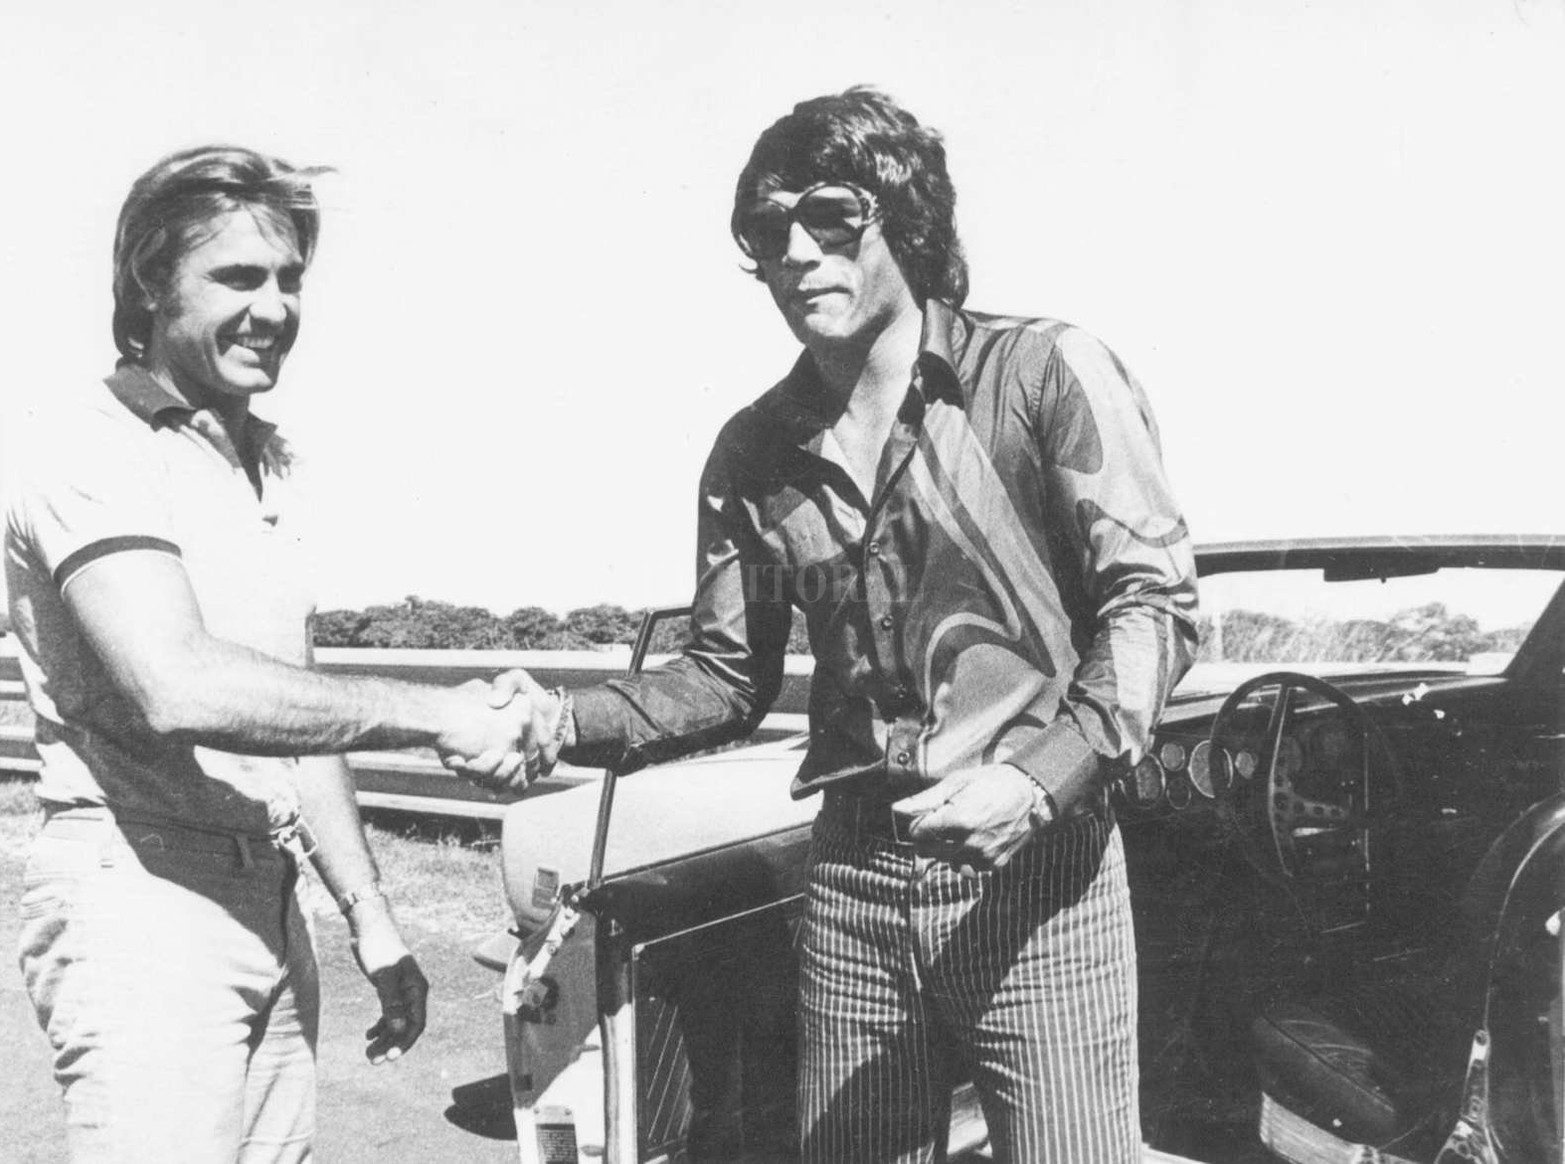 Reutemann en sus años de corredor en una foto junto a Carlos Monzón, ambos en la cumbre de sus carreras deportivas.